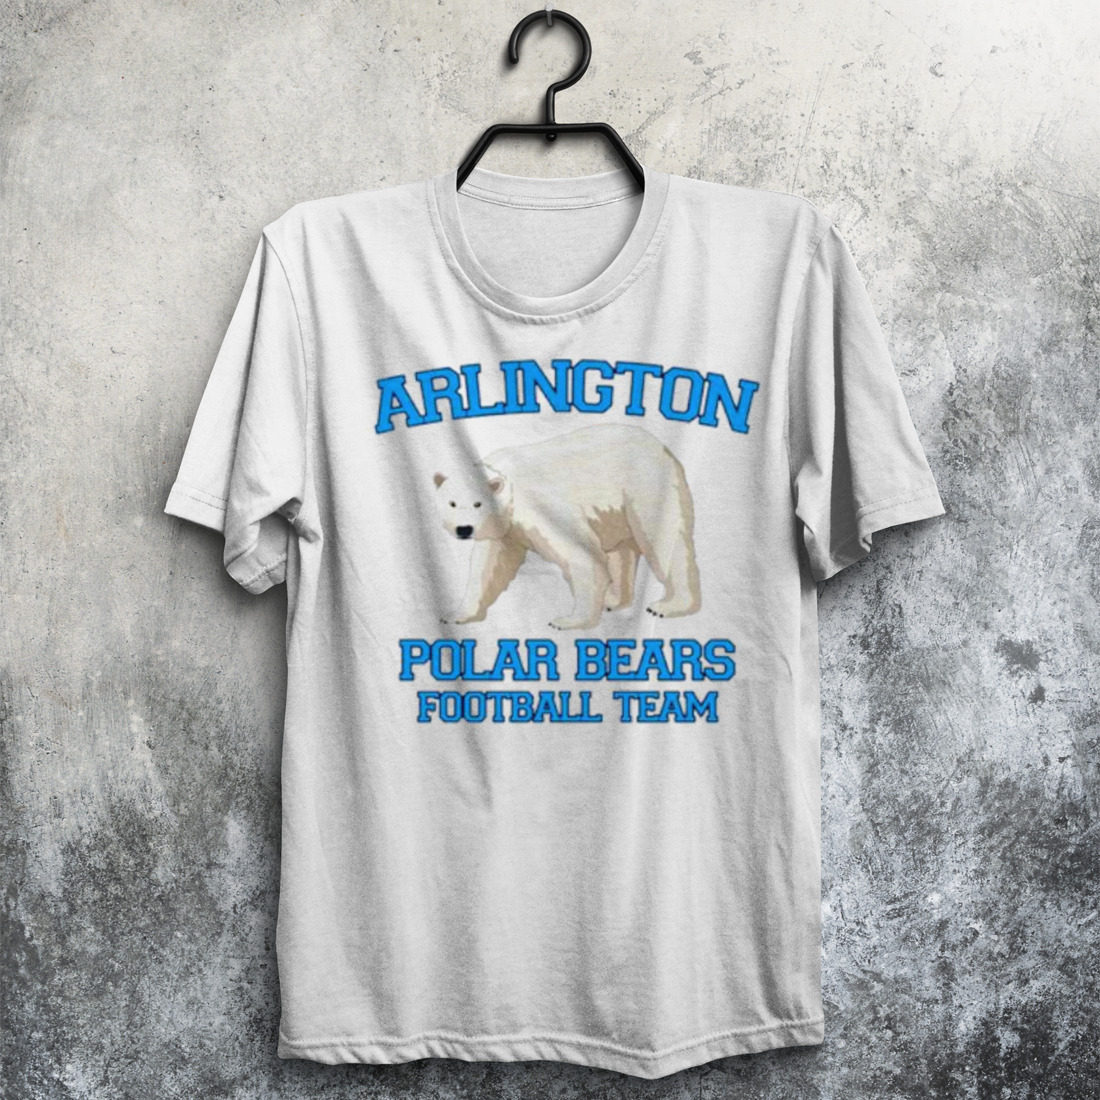 Arlington polar bears football team shirt